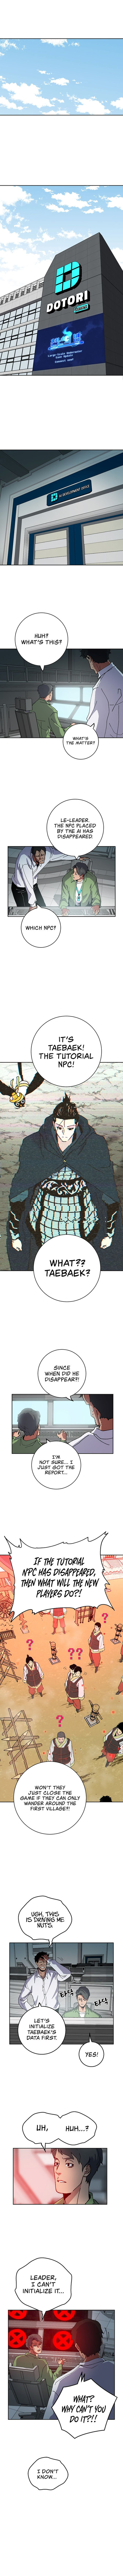 Taebaek: The Tutorial Man - Page 2